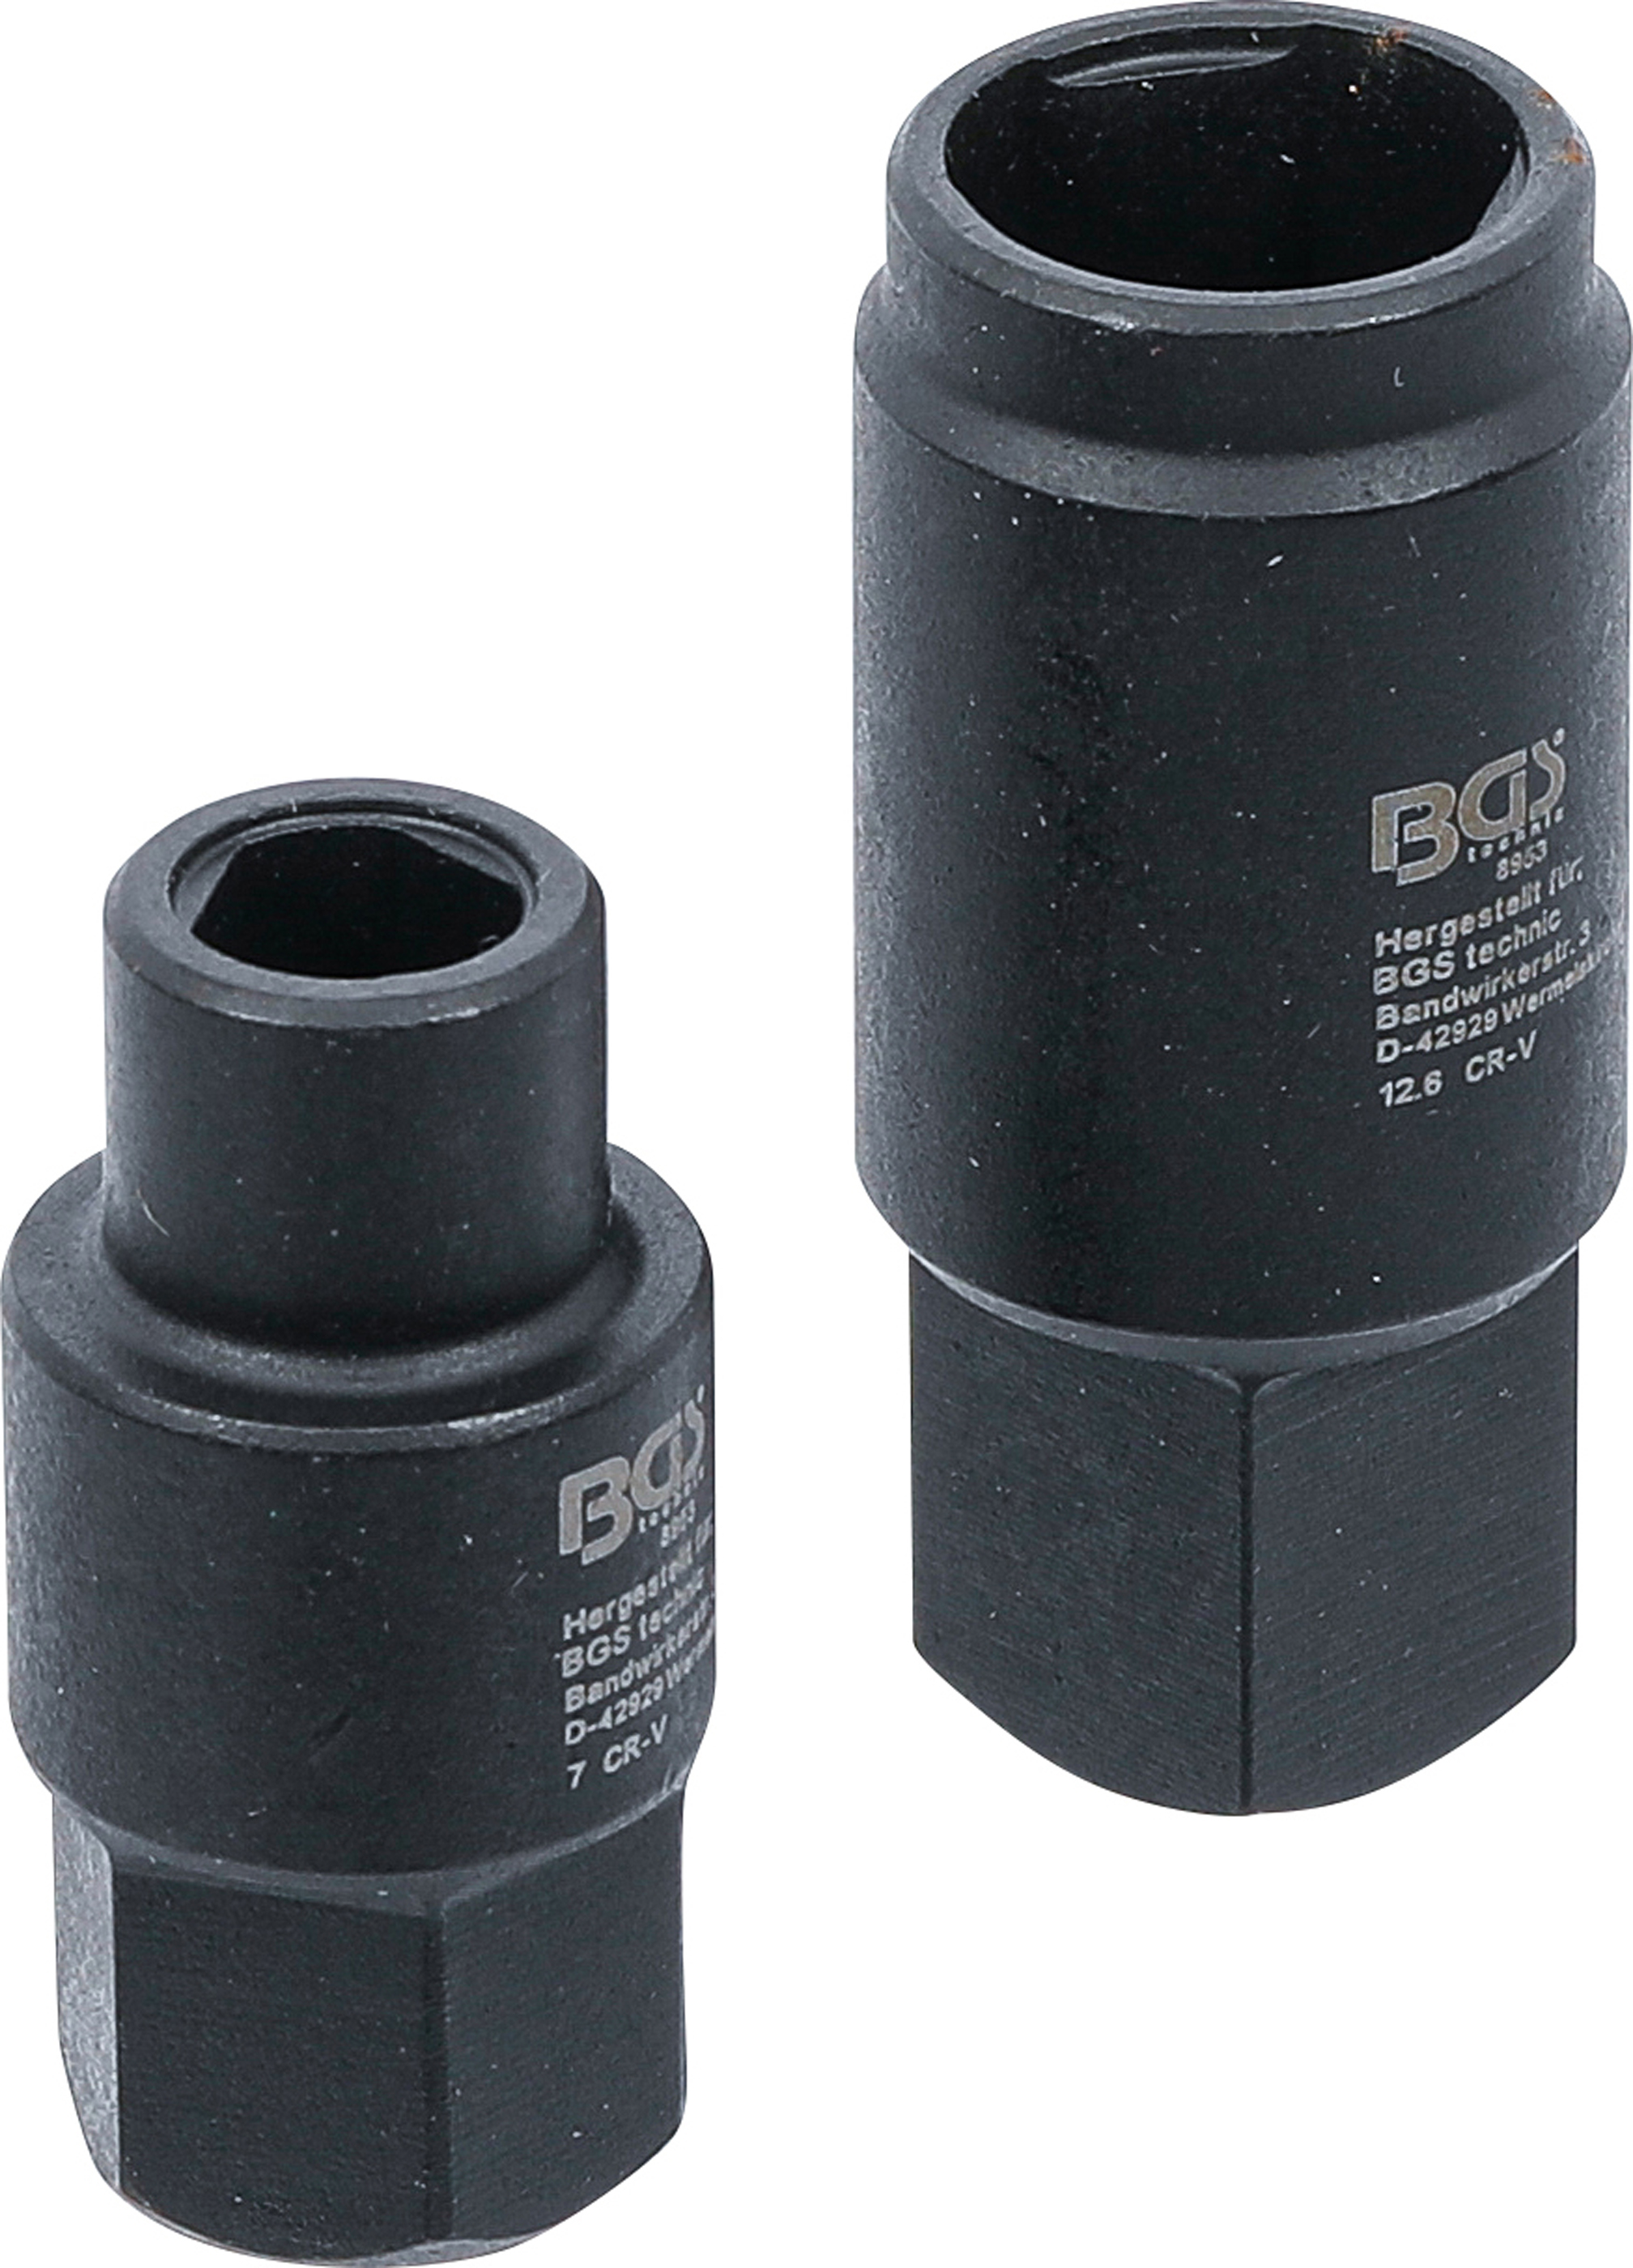 BGS Einsätze für Bosch Einspritzpumpen | 3-Kant | 7 / 12,6 mm